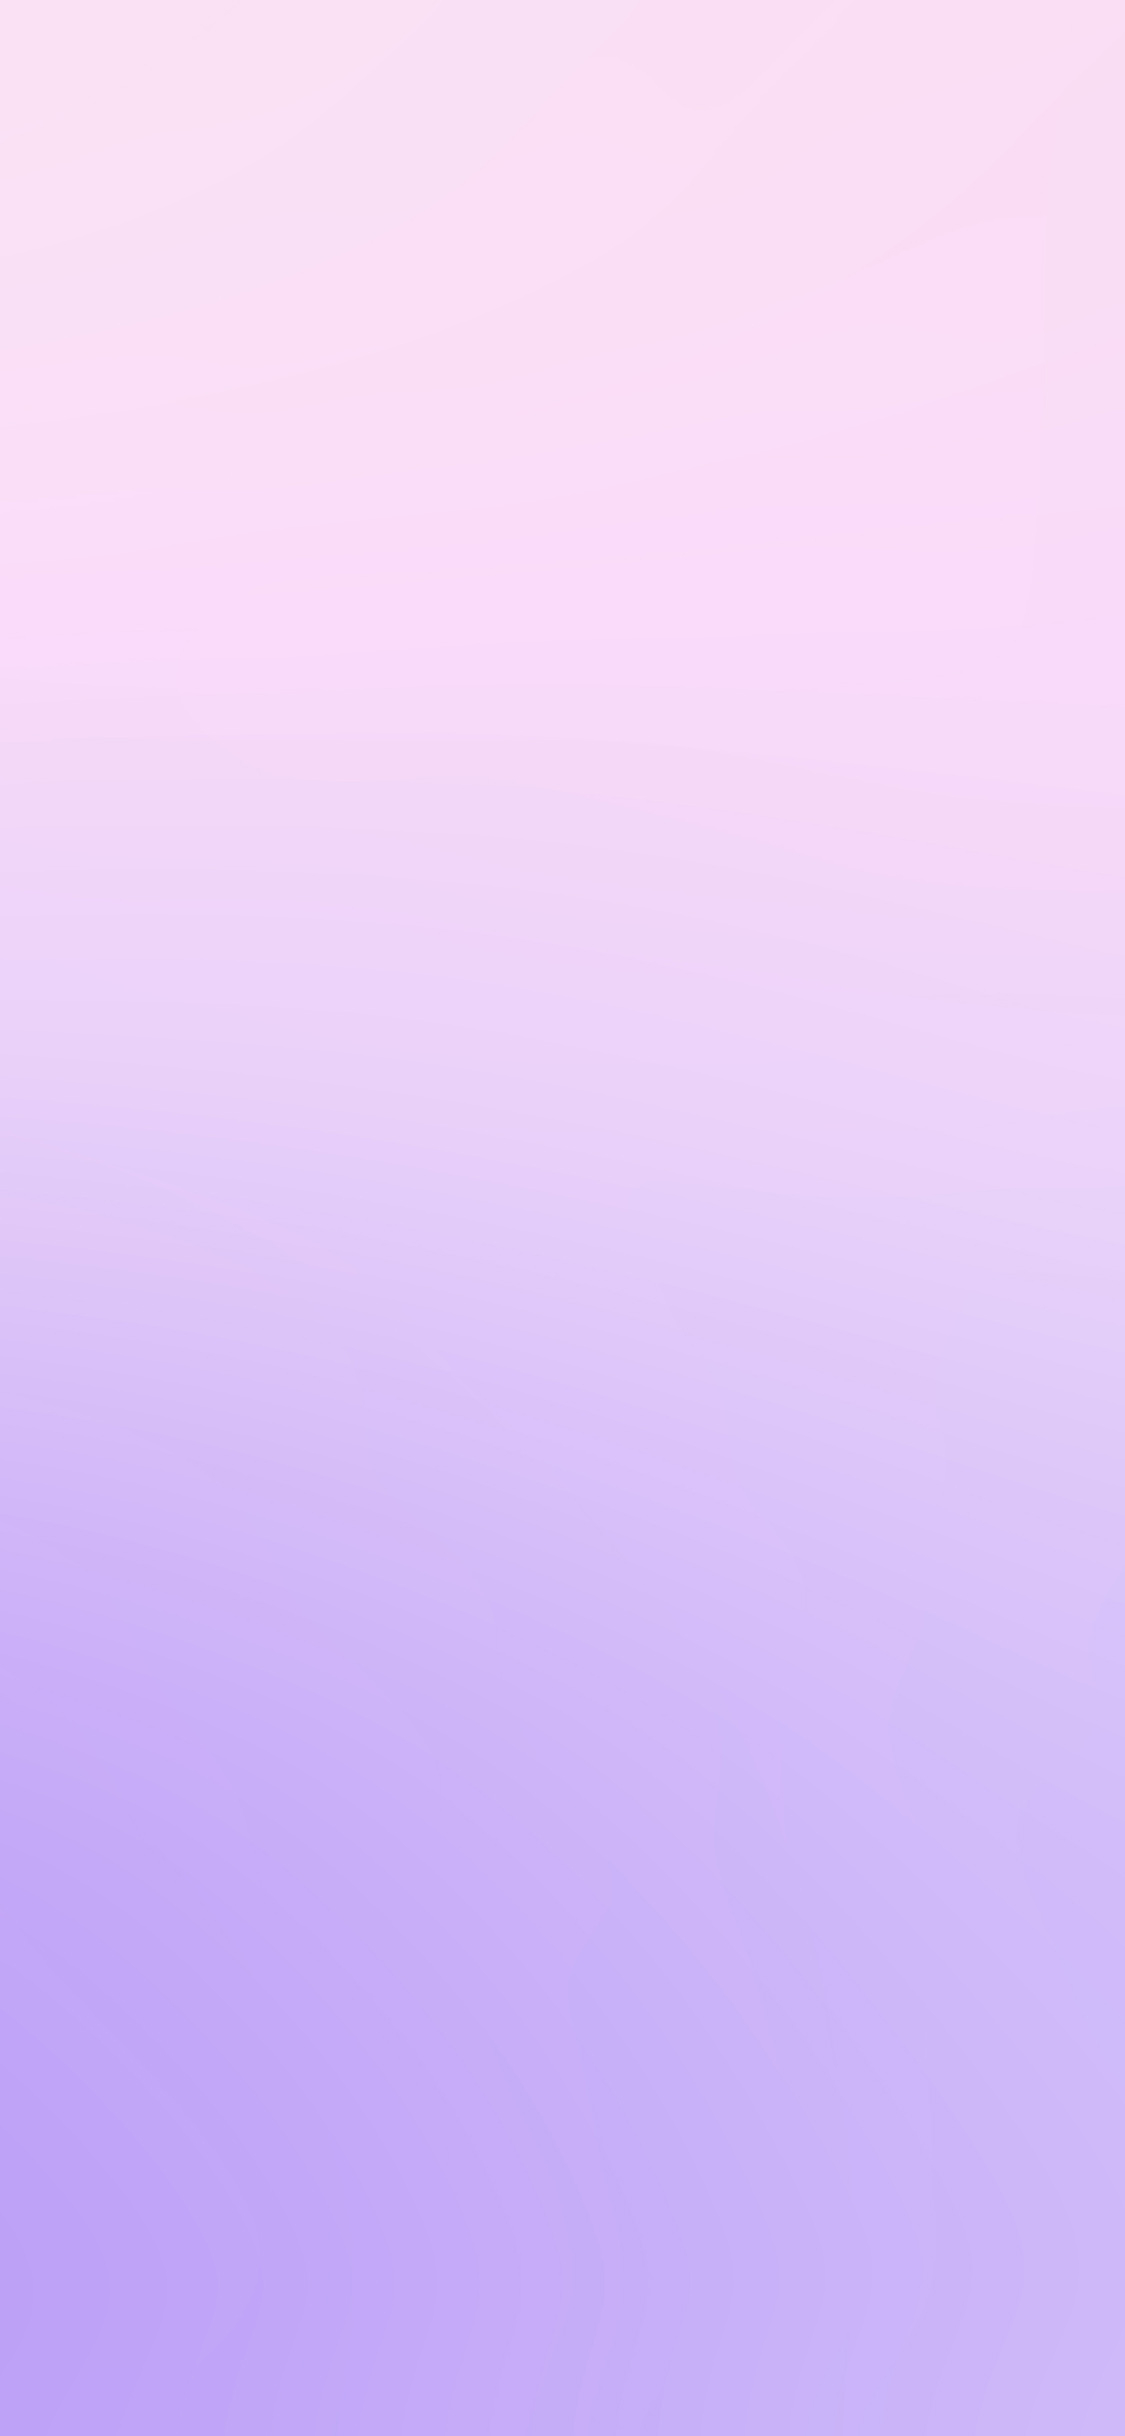 1125x2436 | iPhone11 wallpaper | sk16-cute-purple-blur-gradati